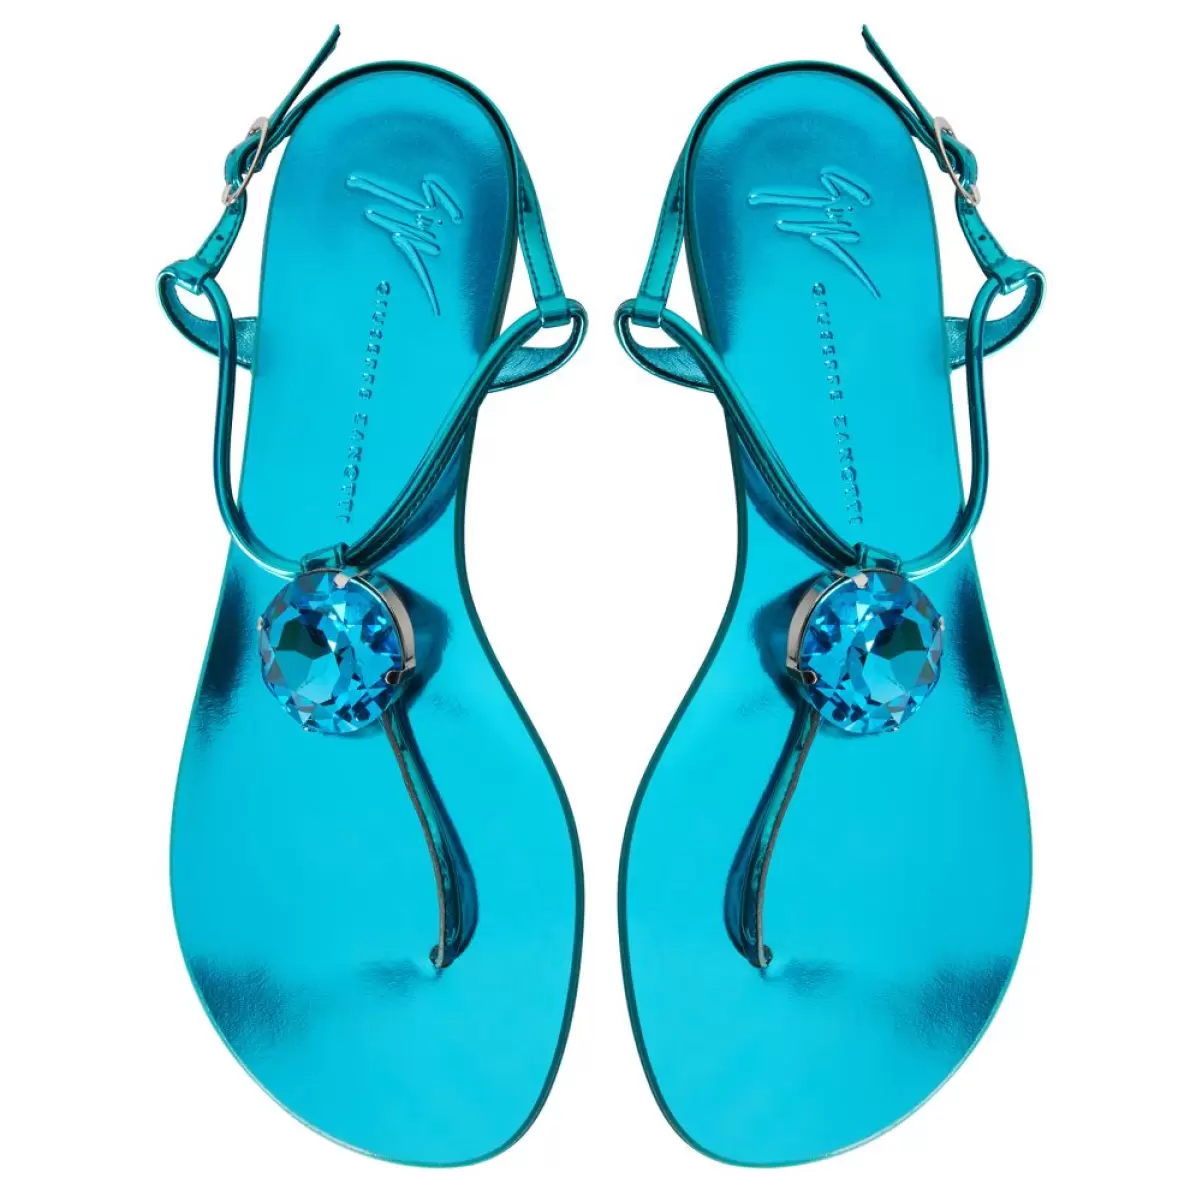 Anthonia Giuseppe Zanotti Mujer Azul Zapatos Planos - 4